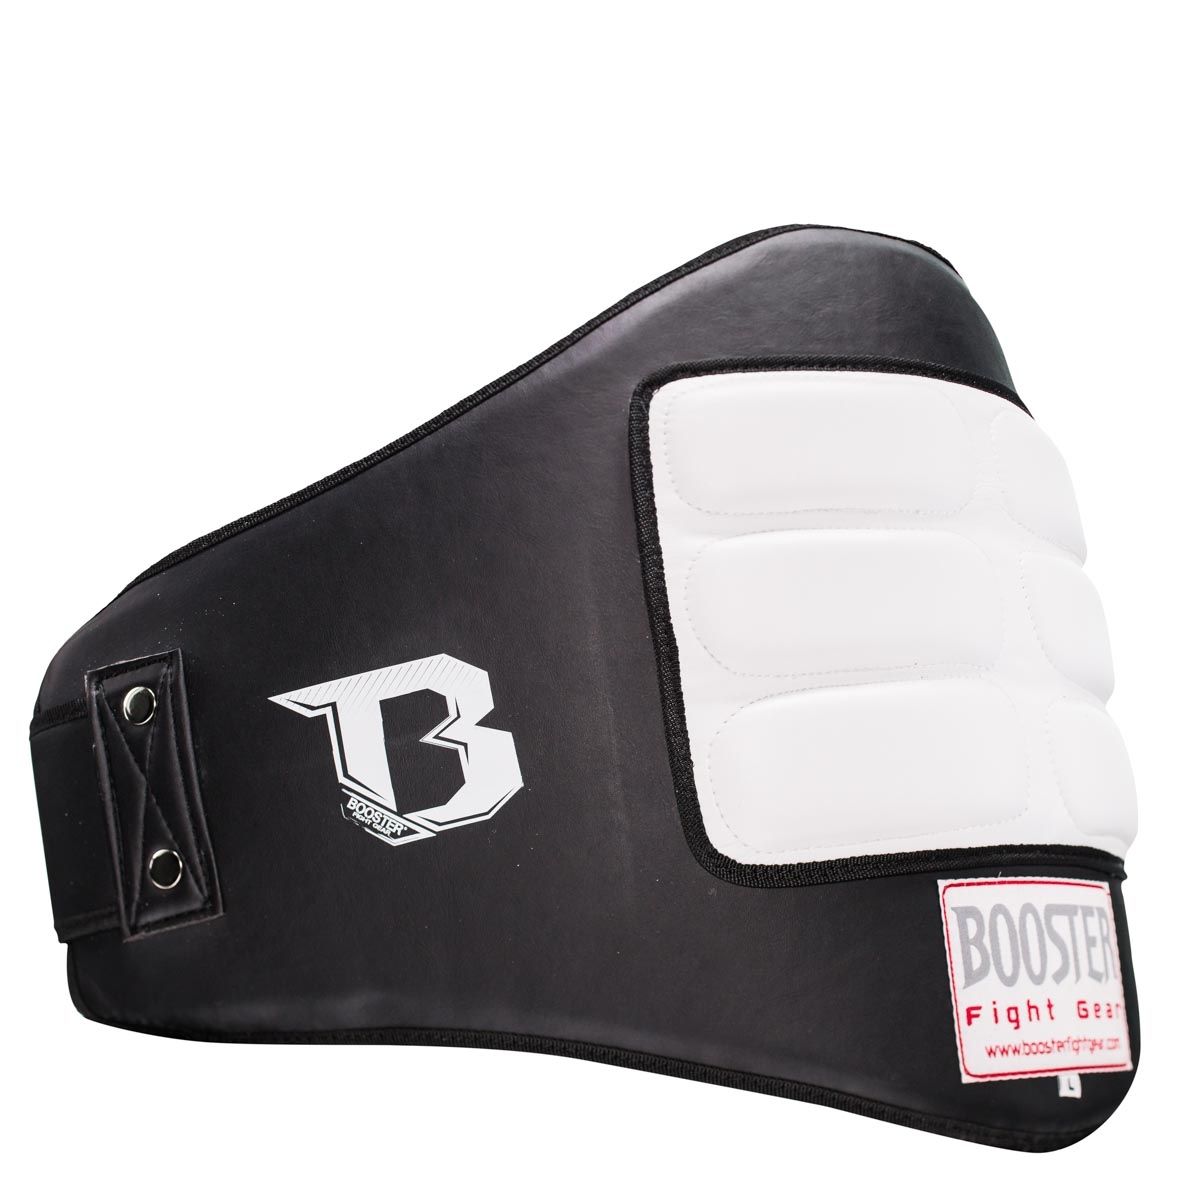 Booster Fightgear -  Belly Pad Shields - buikbescherming- BP 3-L -zwart - wit